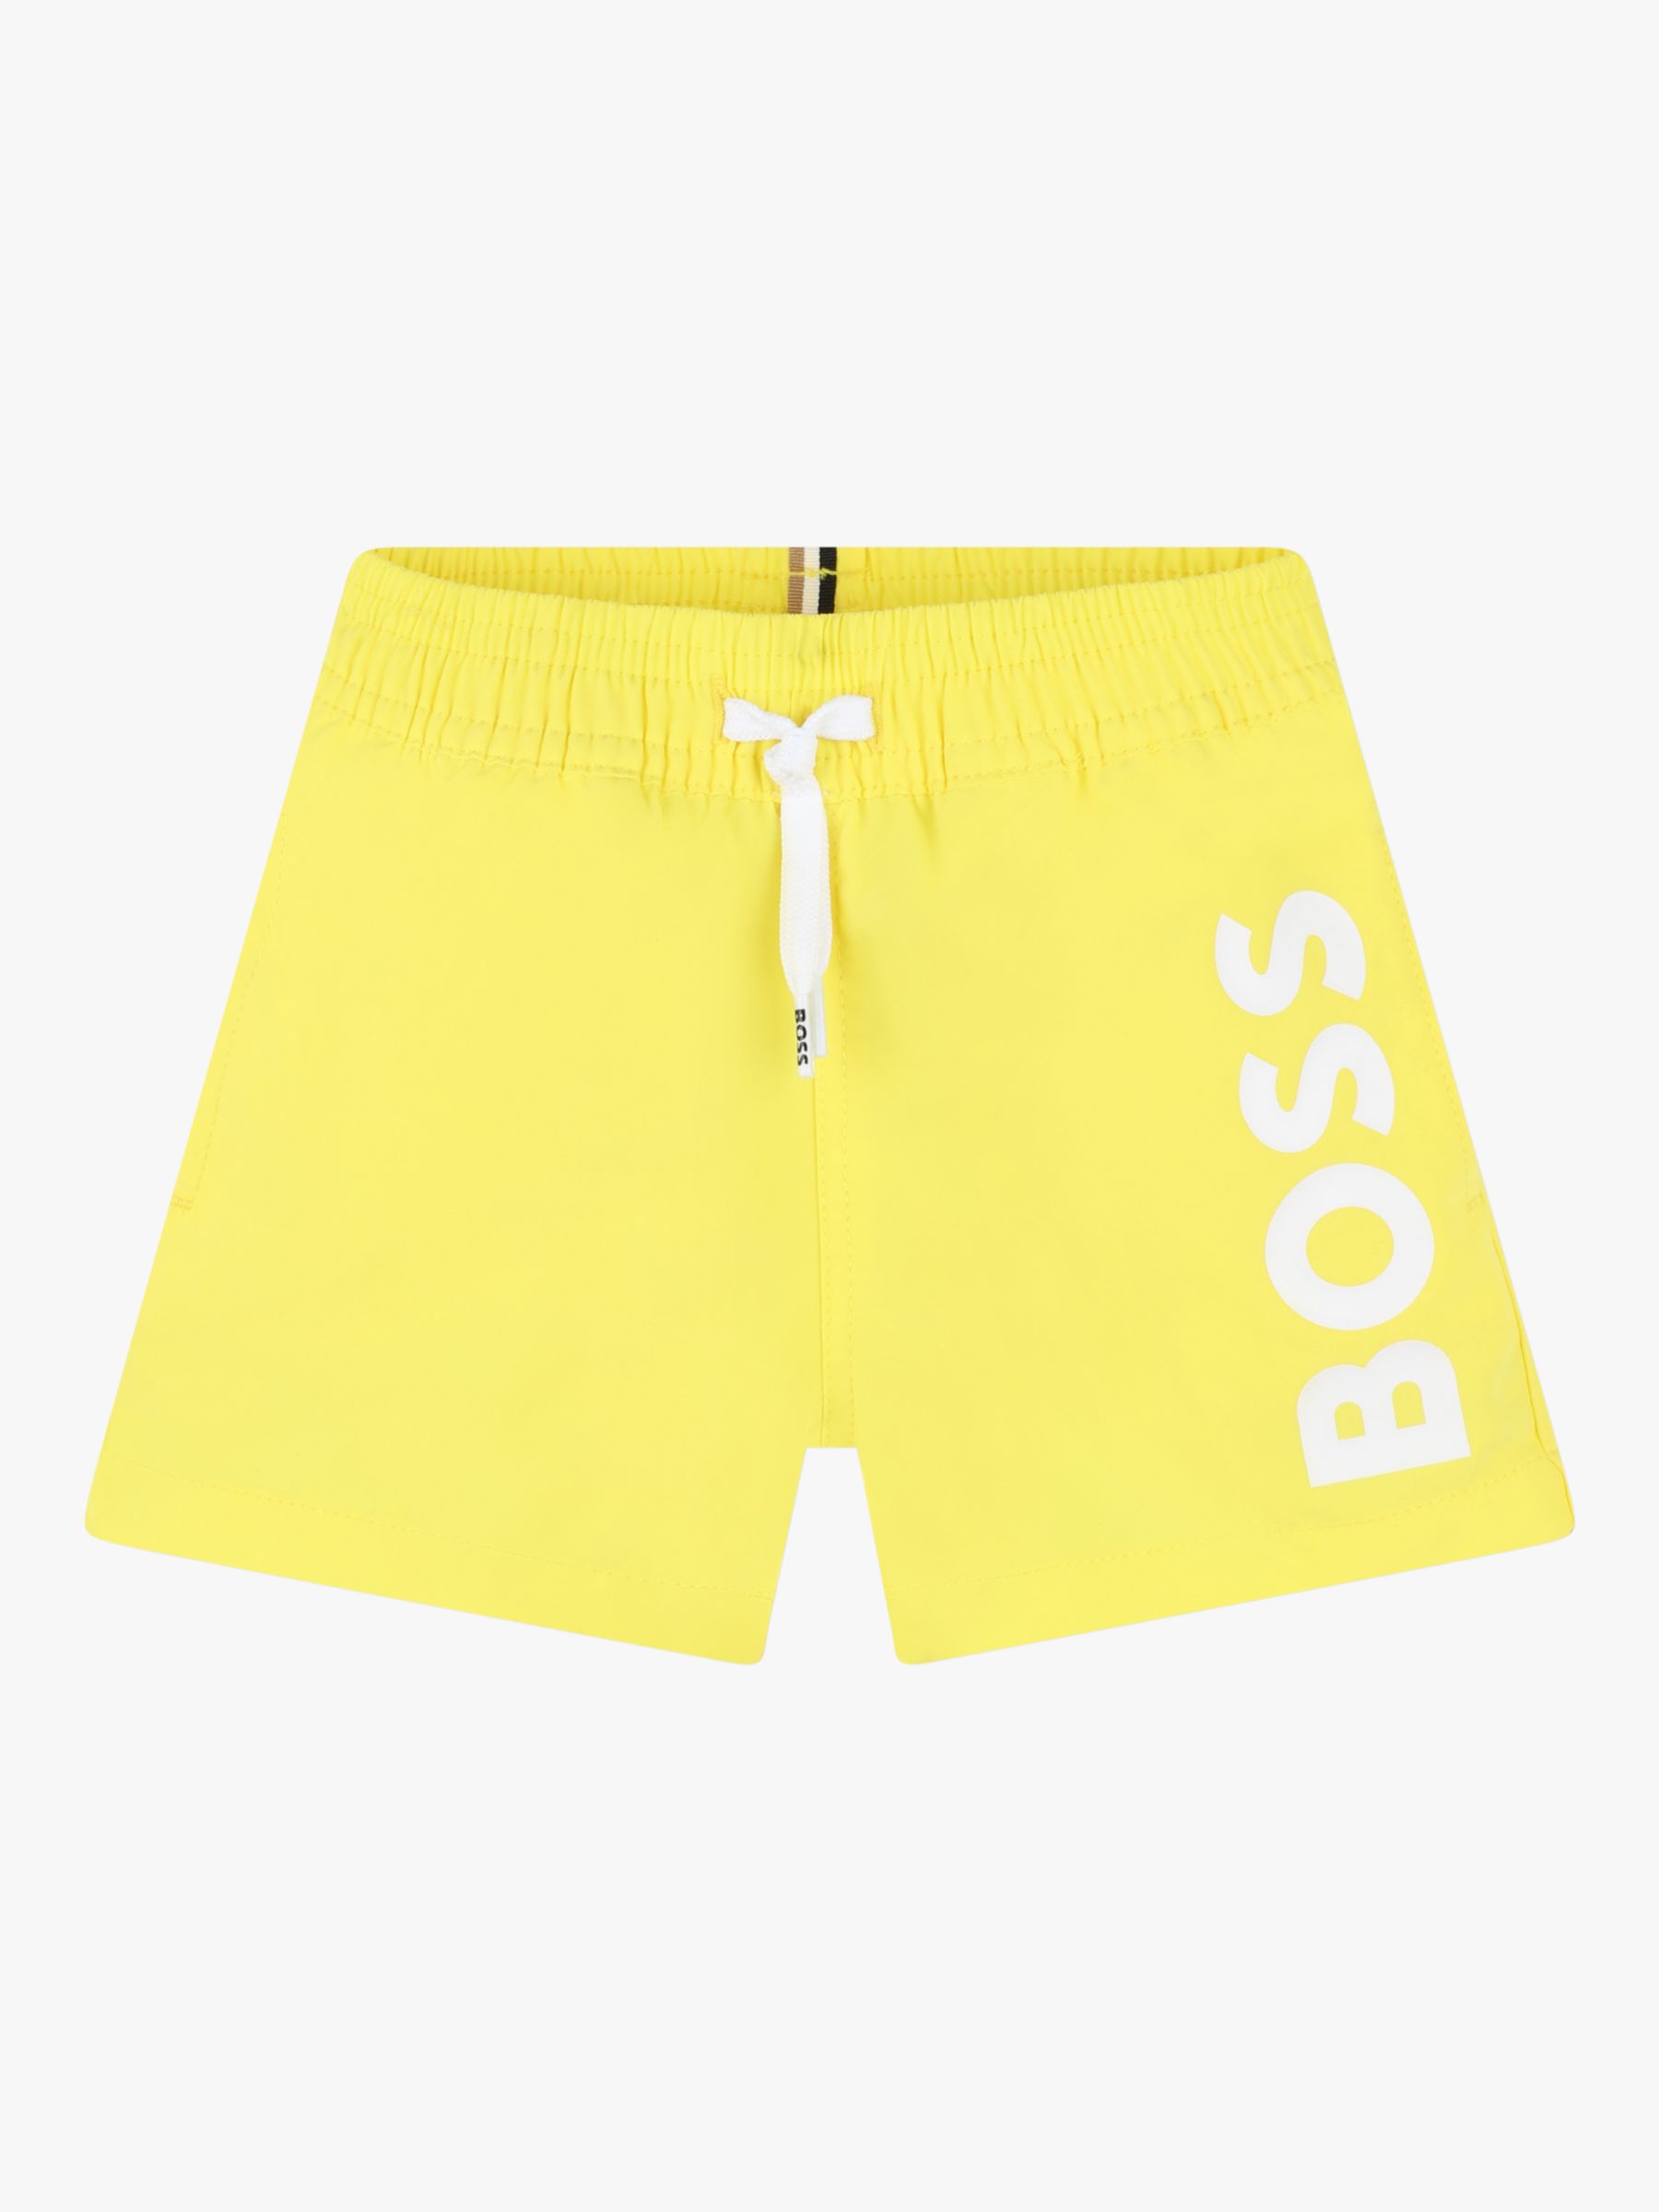 BOSS Baby Logo Drawstring Swim Shorts, Yellow, 2 years